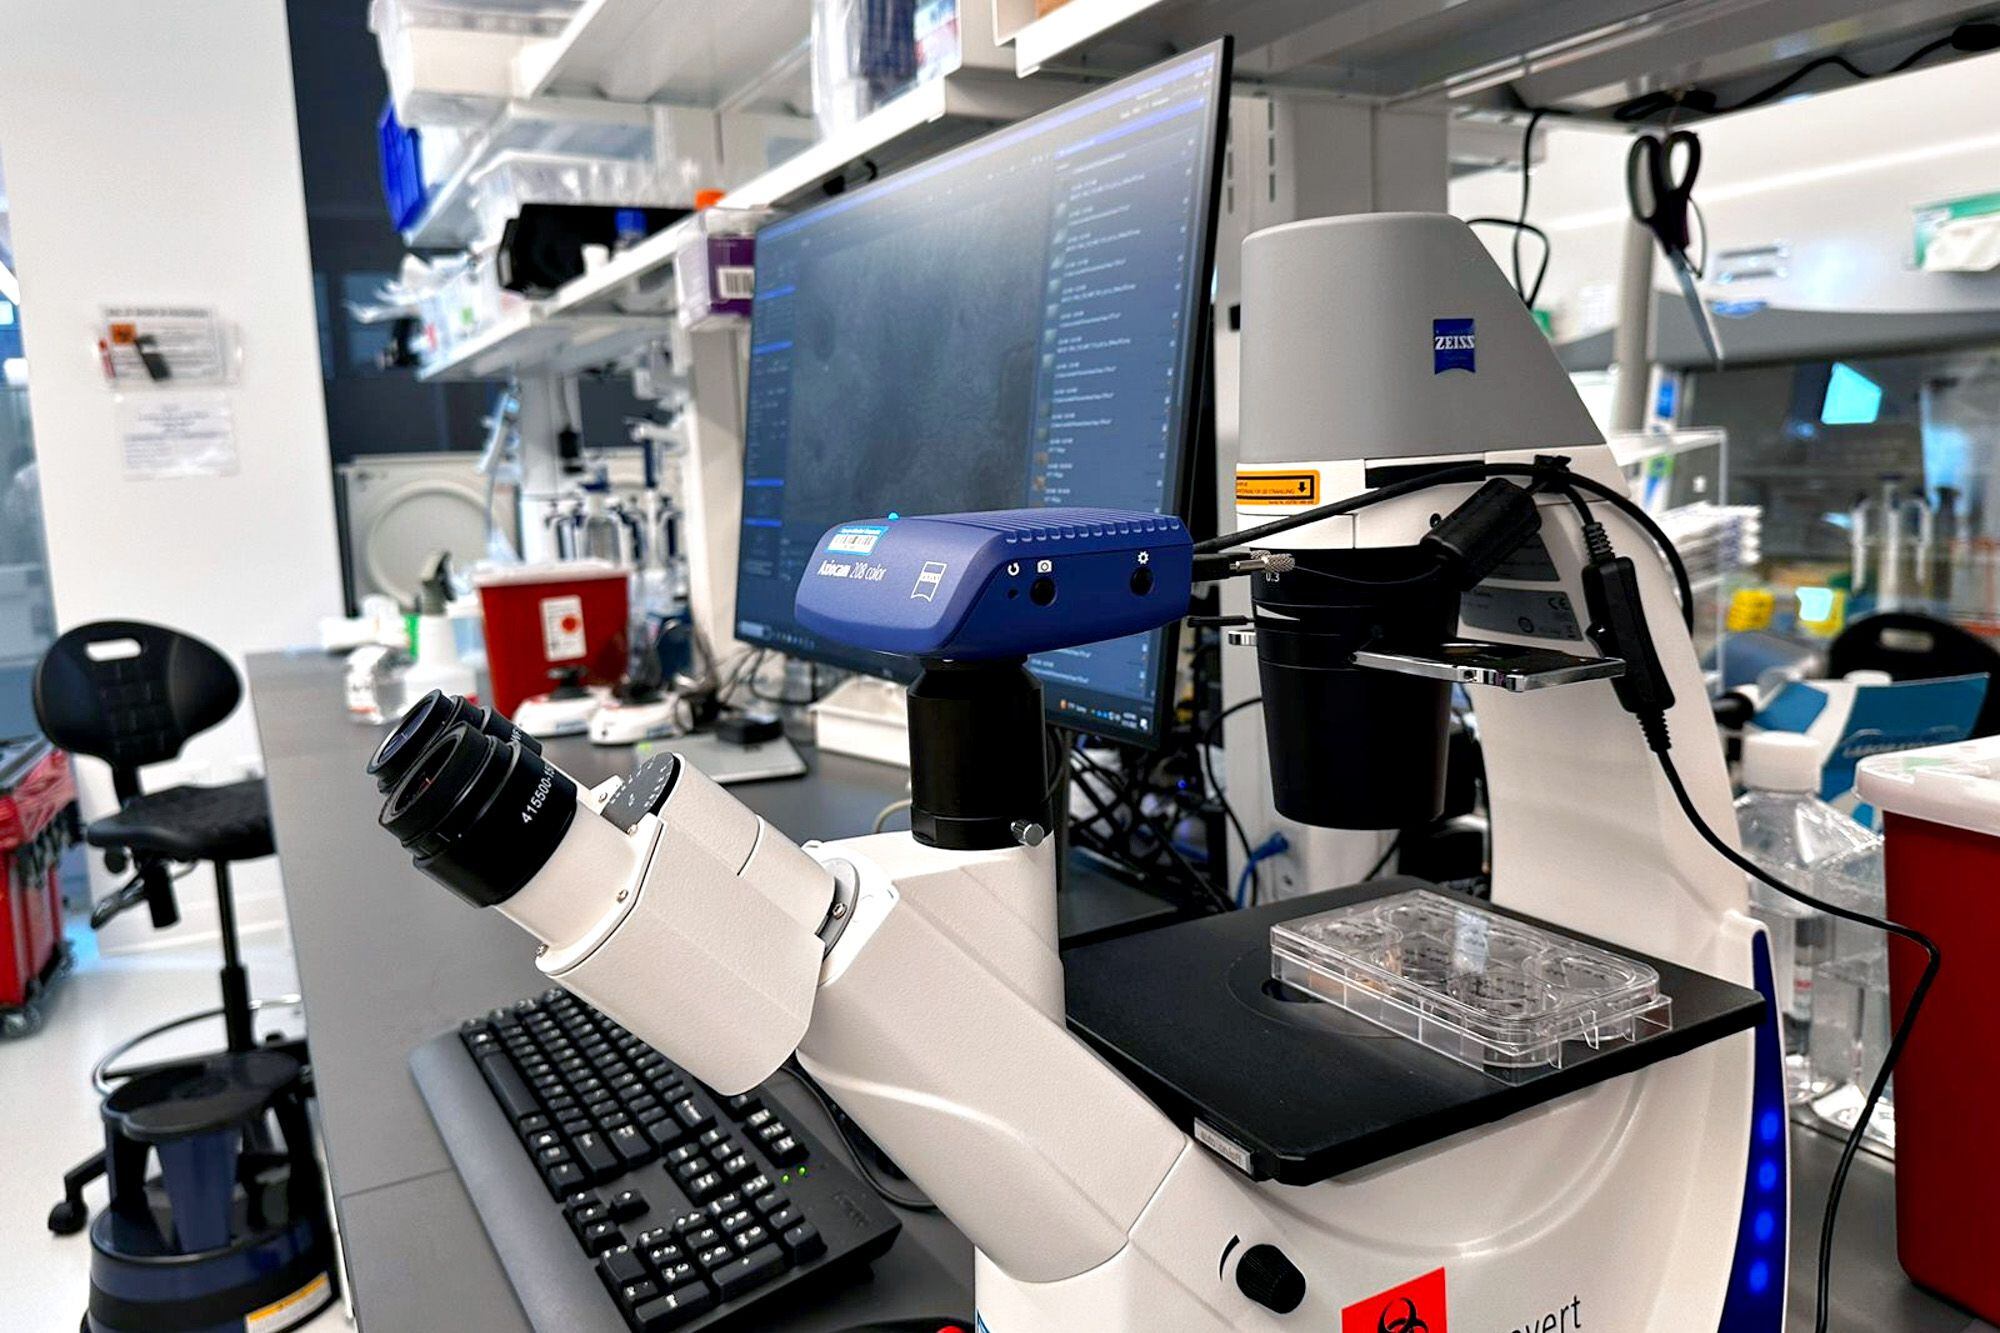 Viaje al interior de tres laboratorios donde se desarrollan los medicamentos del futuro contra el cáncer y el Parkinson